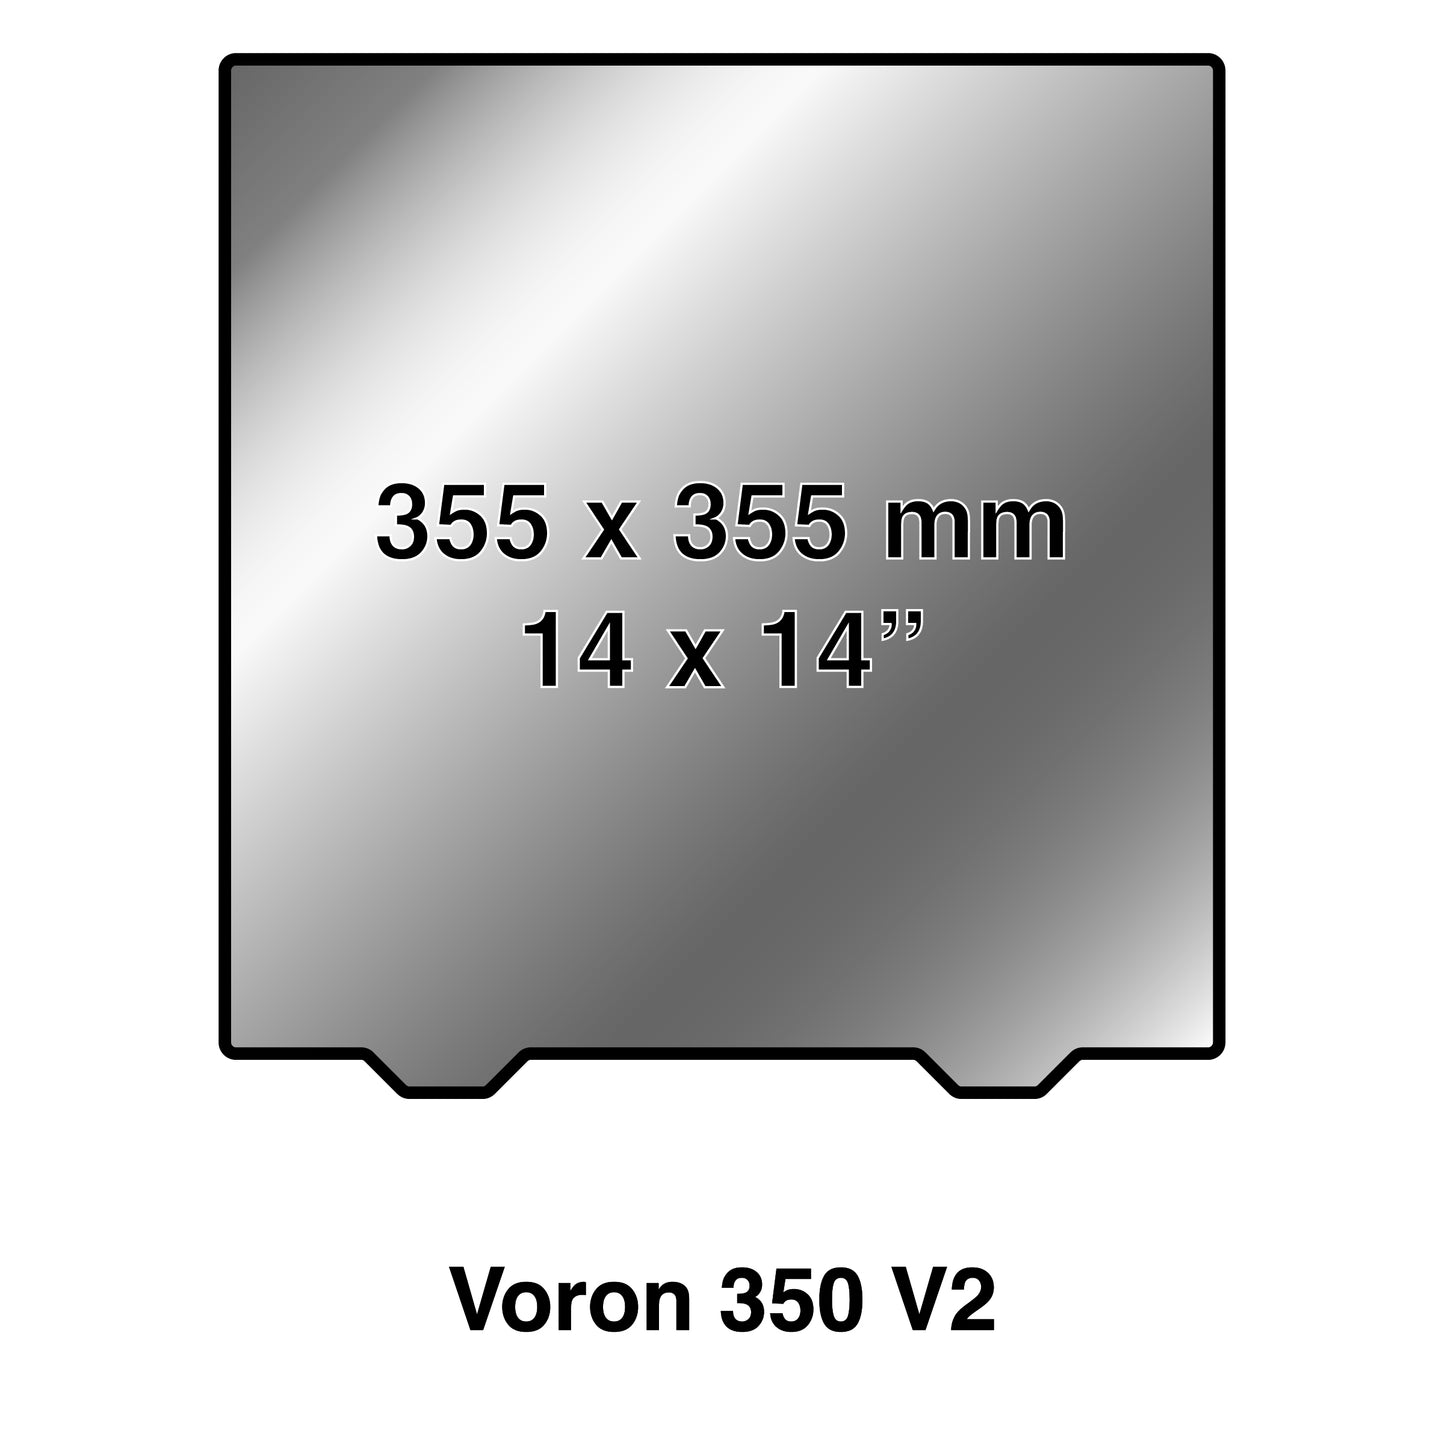 355 x 355 Kit with Pre-Installed PEX Build Surface - VORON Design 350 V2 & Sovol SV08